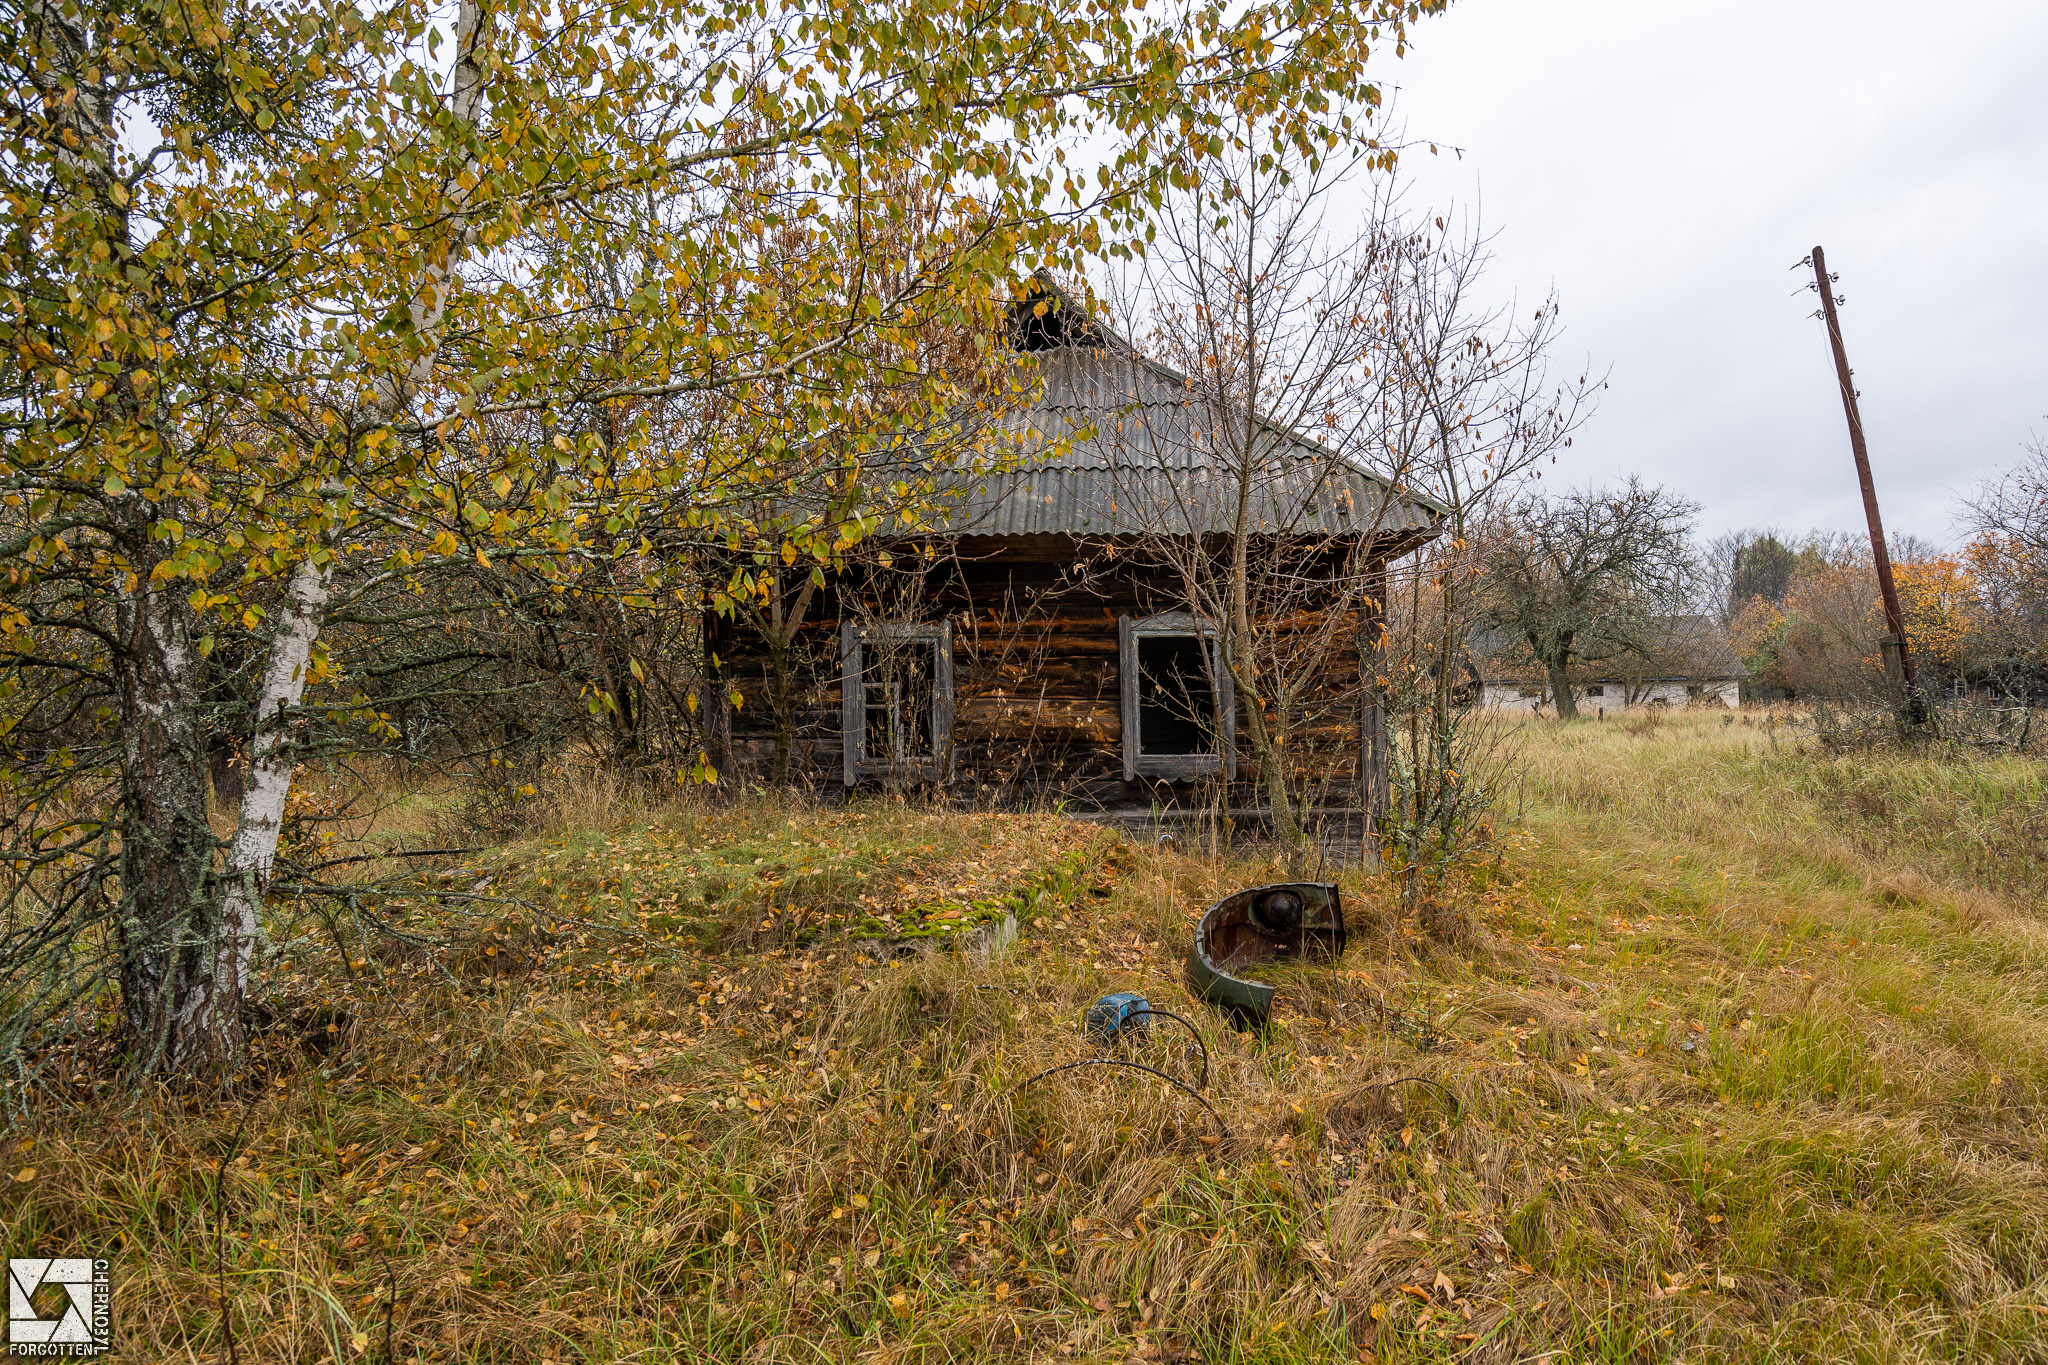 Zymovyshche Village in the Chernobyl Zone